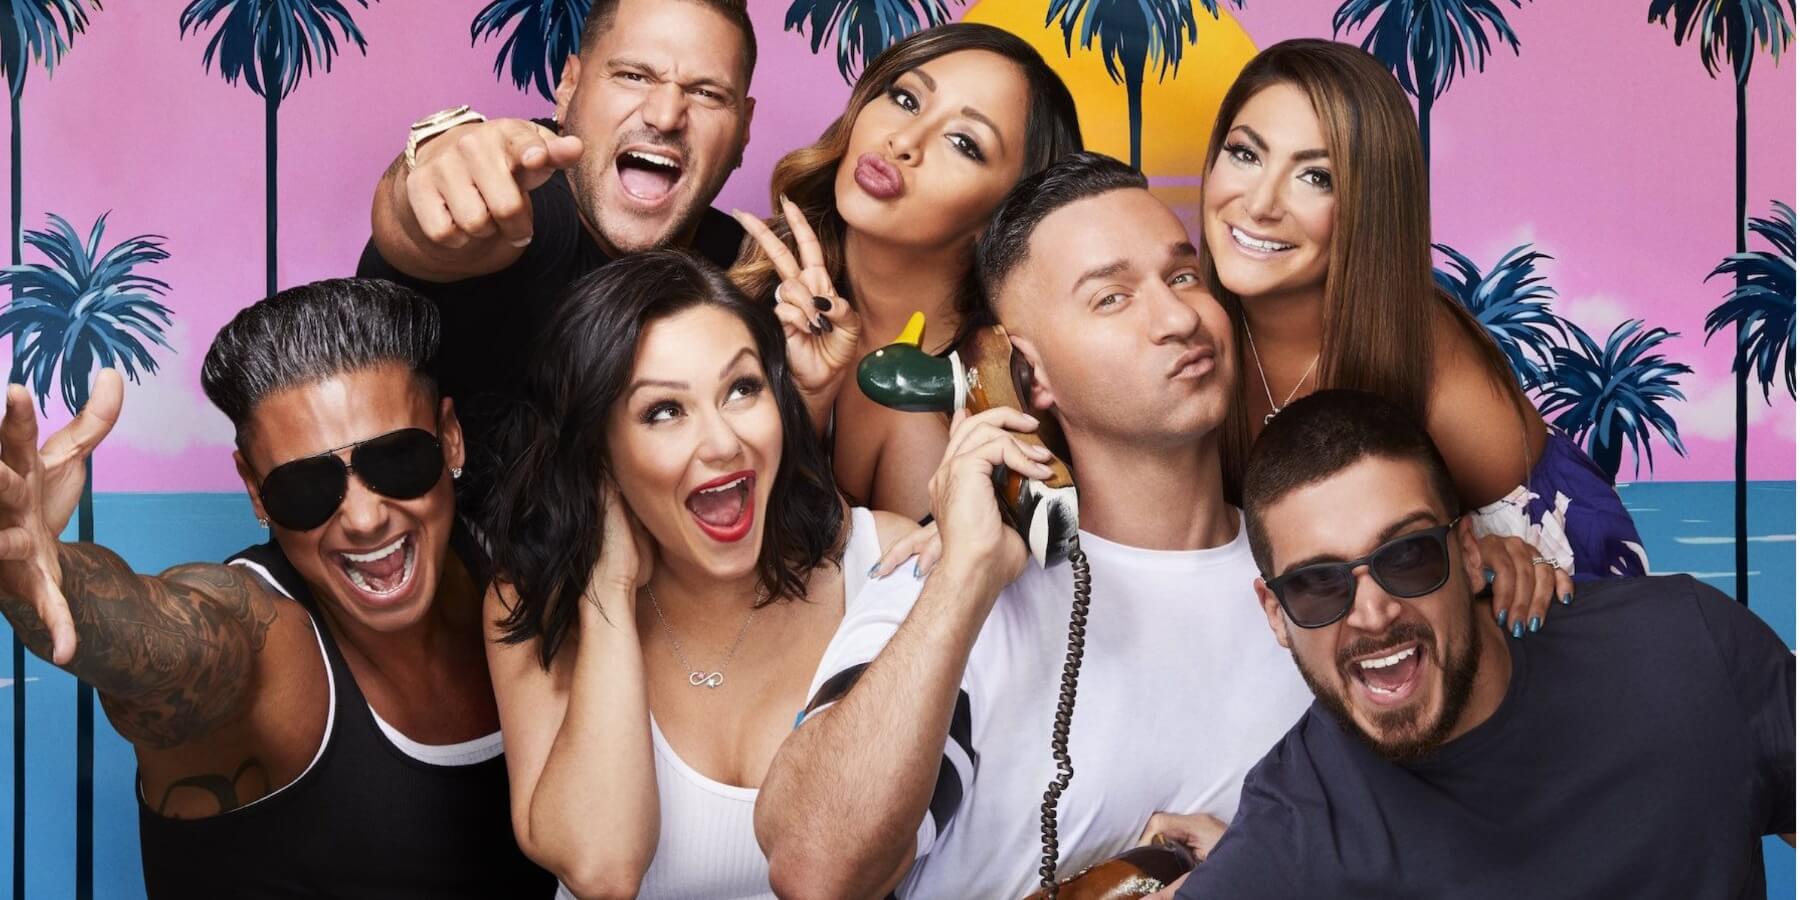 The cast of 'Jersey Shore: Family Vacation' season 1 includes Paul DelVecchio, Ronnie Ortiz-Magro, Jenni Farley, Nicole Polizzi, Mike Sorrentino, Deena Cortese and Vinny Guadagnino.